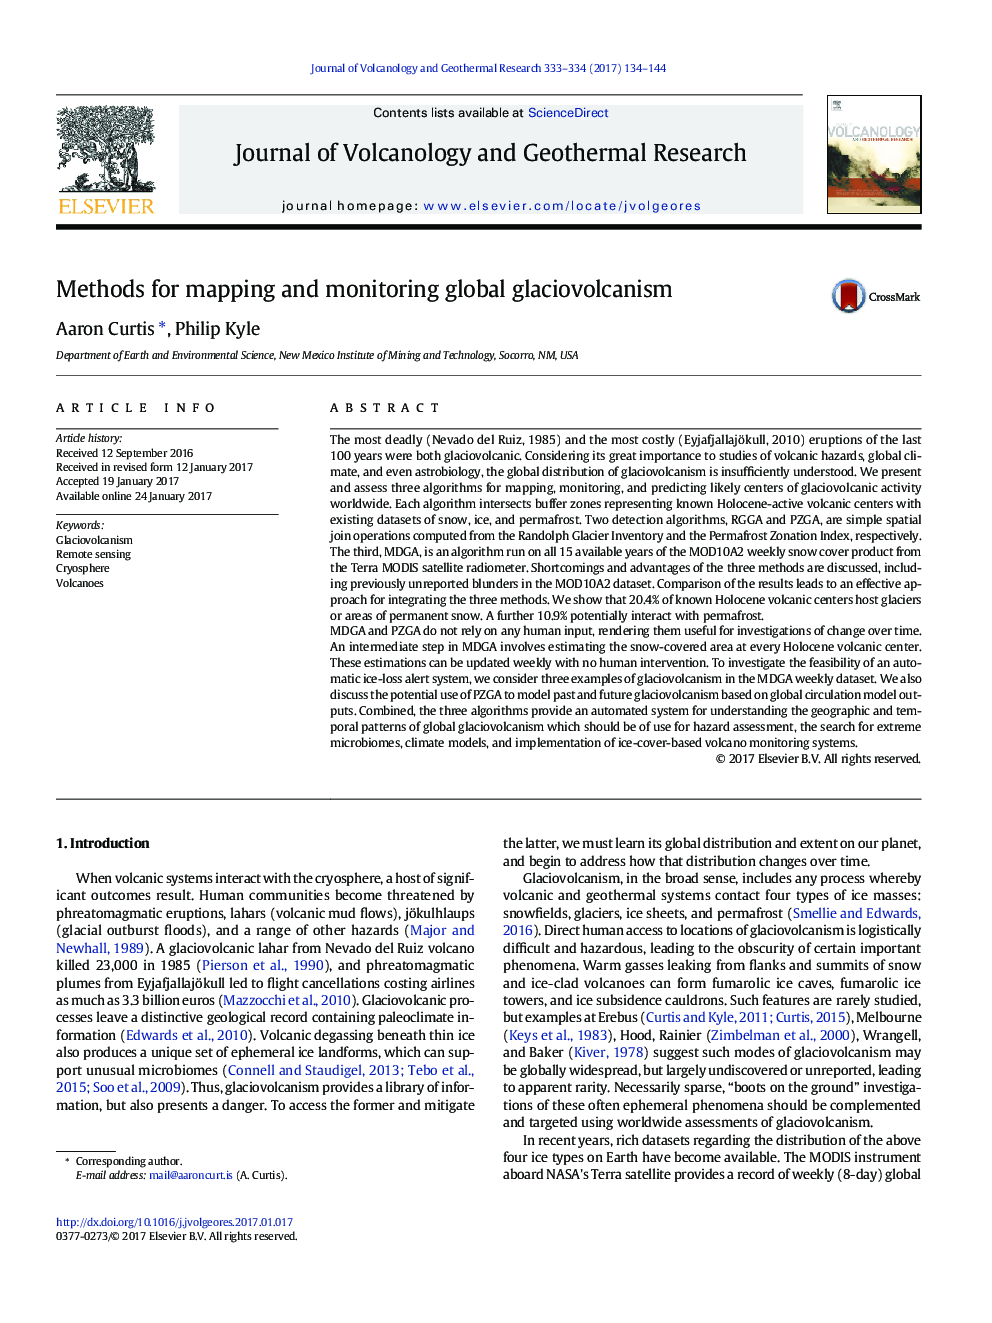 روش های نقشه برداری و نظارت بر گلایسوولکانیزم جهانی